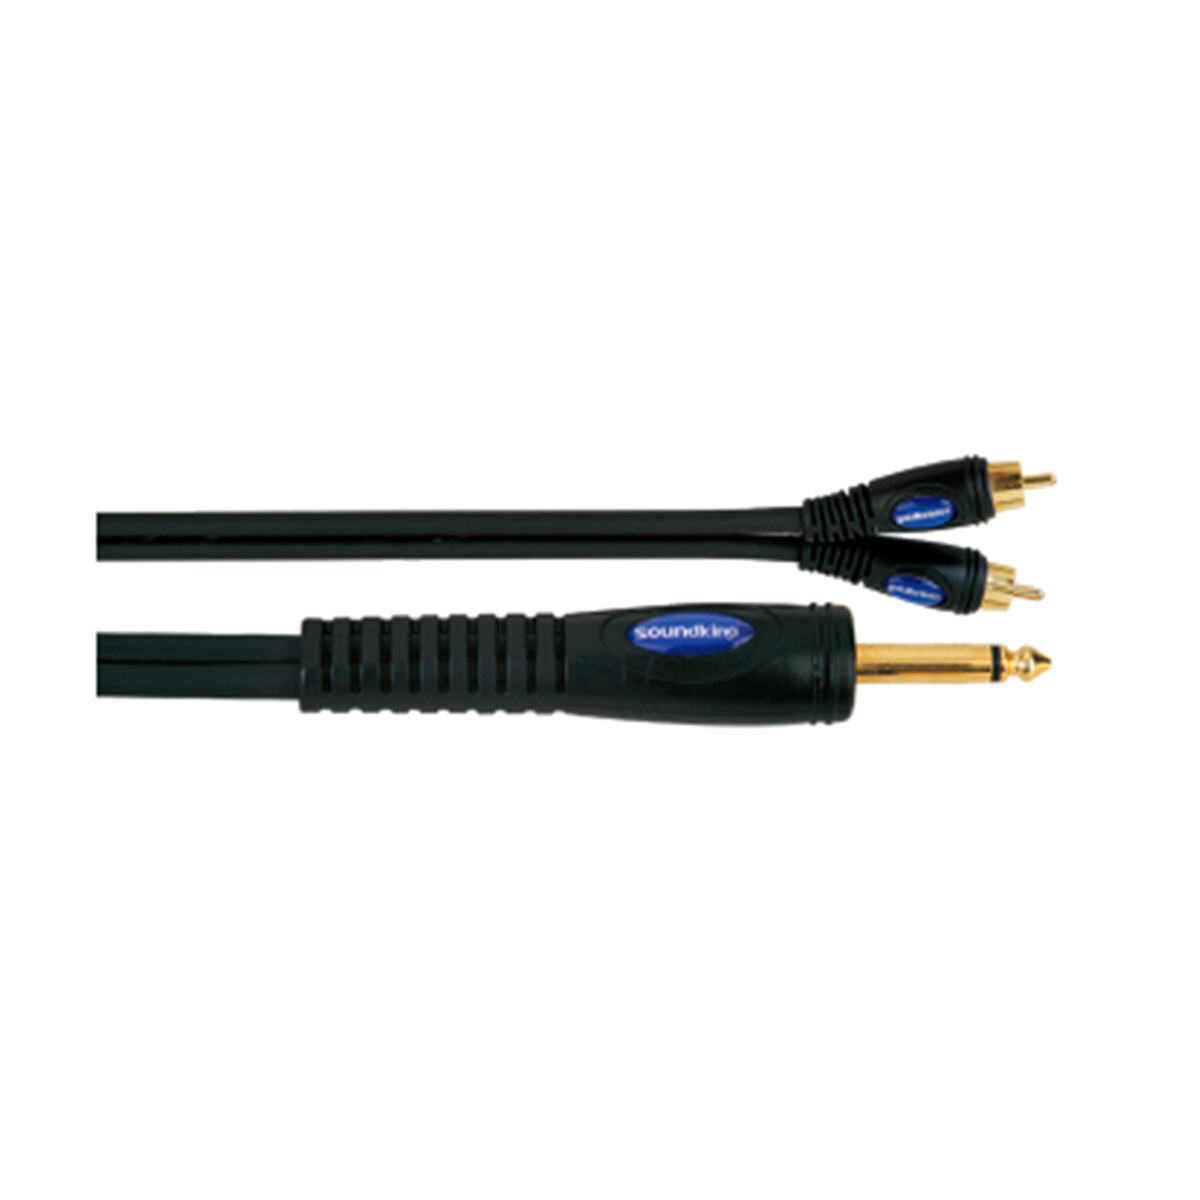 Cable Adaptador Soundking B11375m 1x6,3m+2xrca 5m 